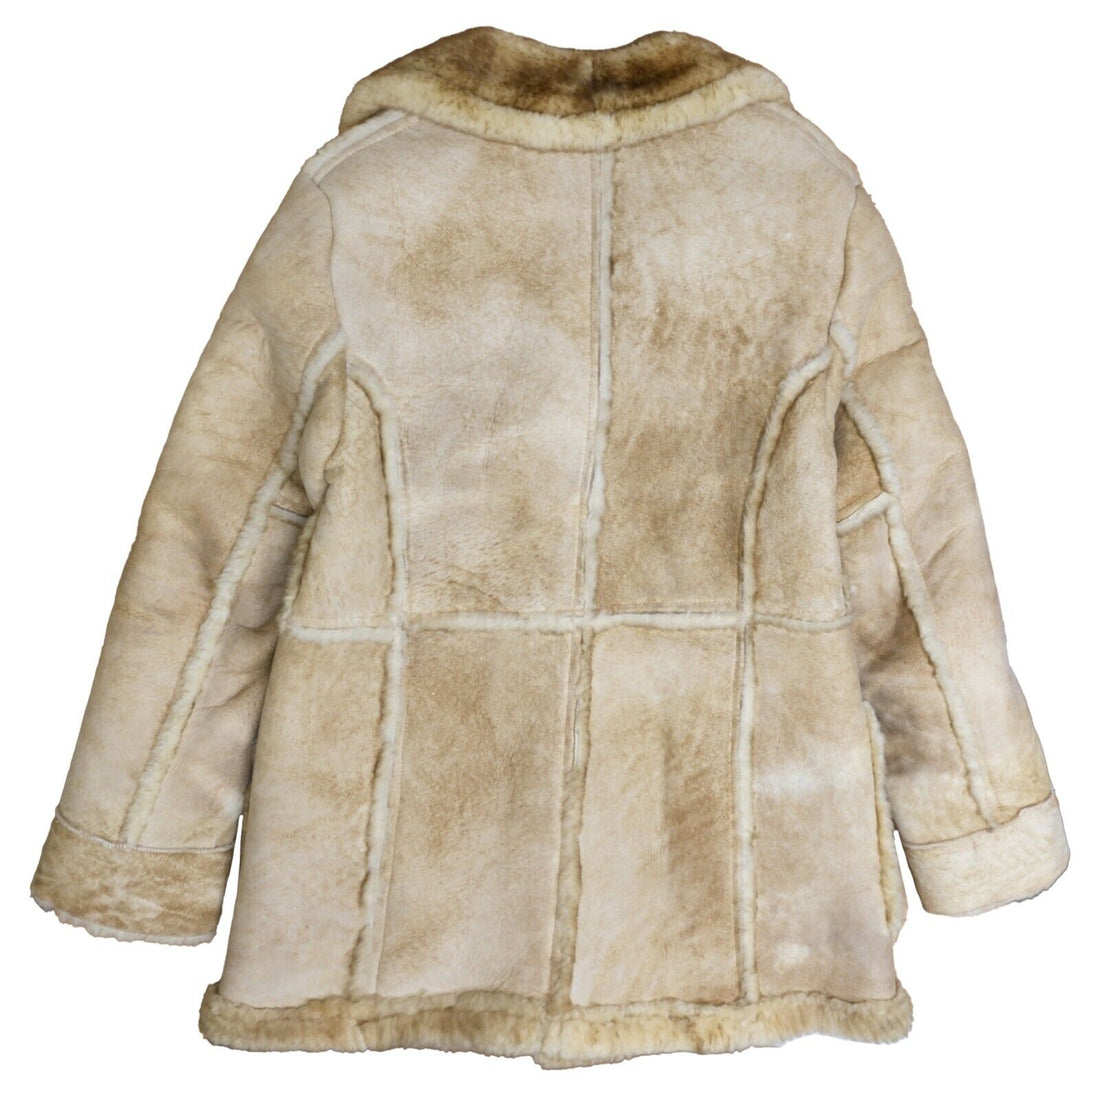 Vintage Shearling by Lawrence Parka Coat Jacket Size 44 Beige